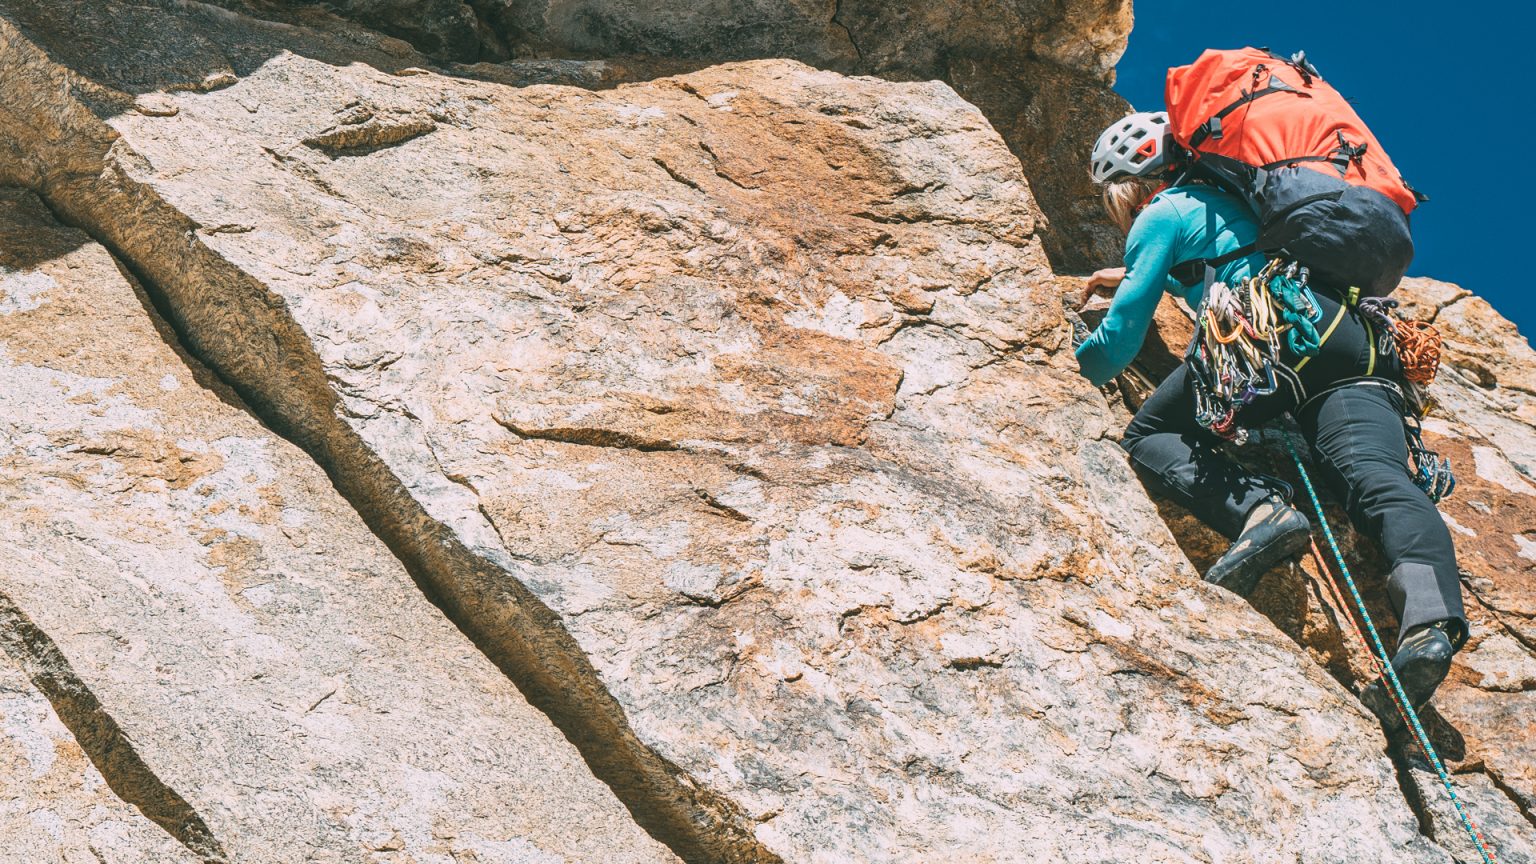 Athlete during rock climbing